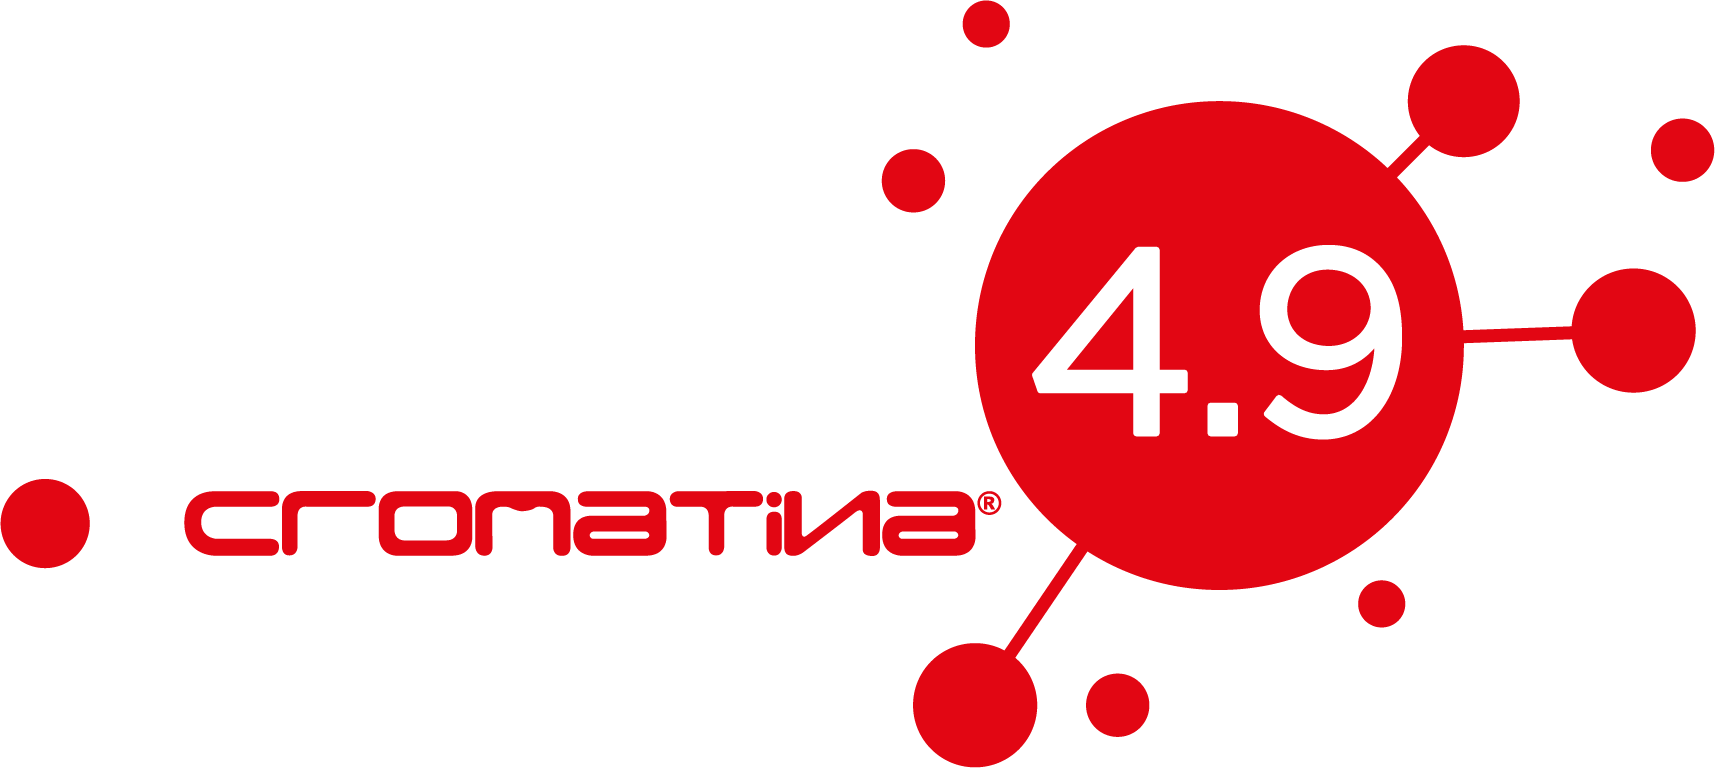 Area 4.9